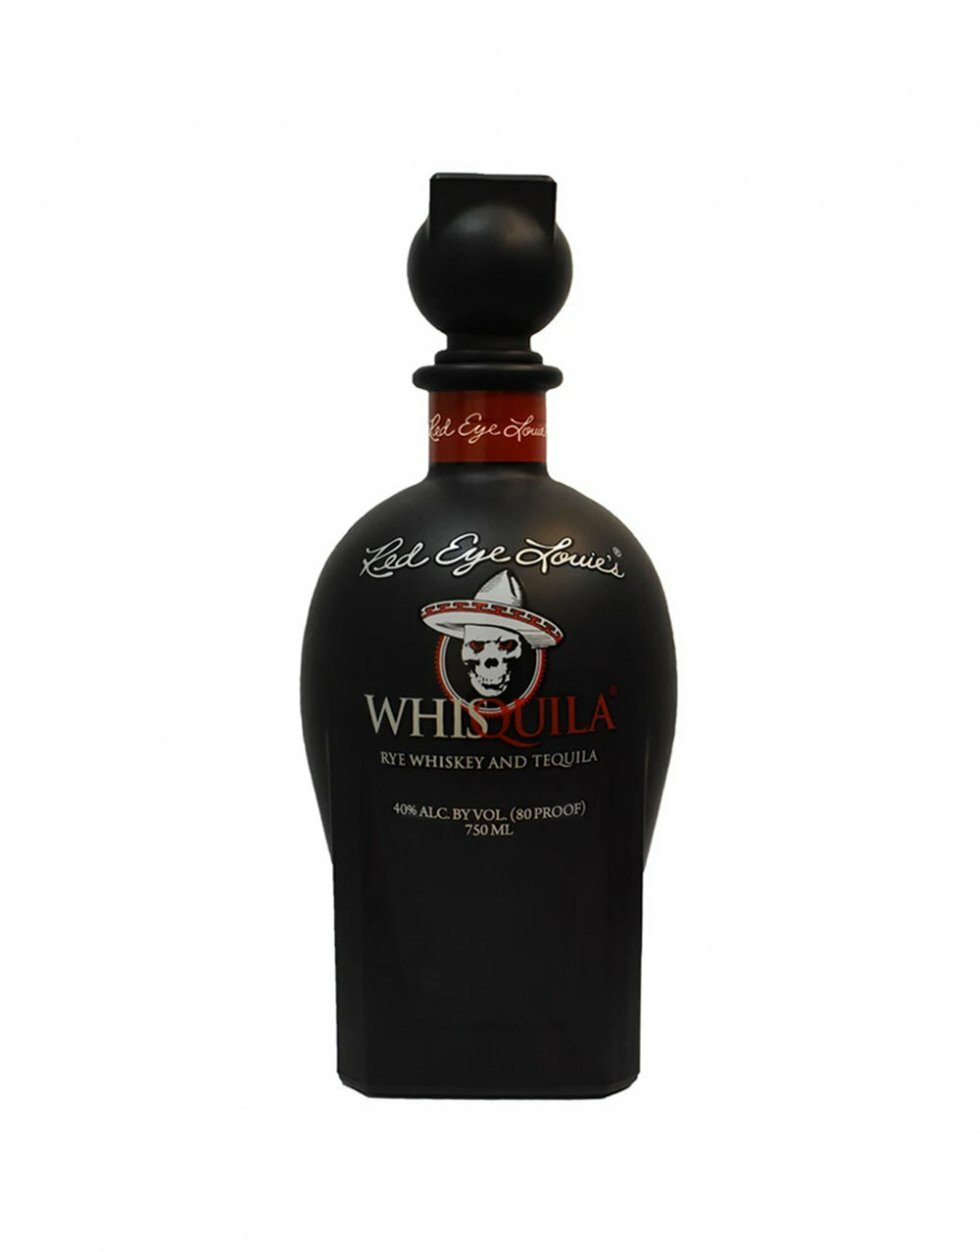 Whisquila: whisky møder tequila i god tur i hegnet-spiritus 